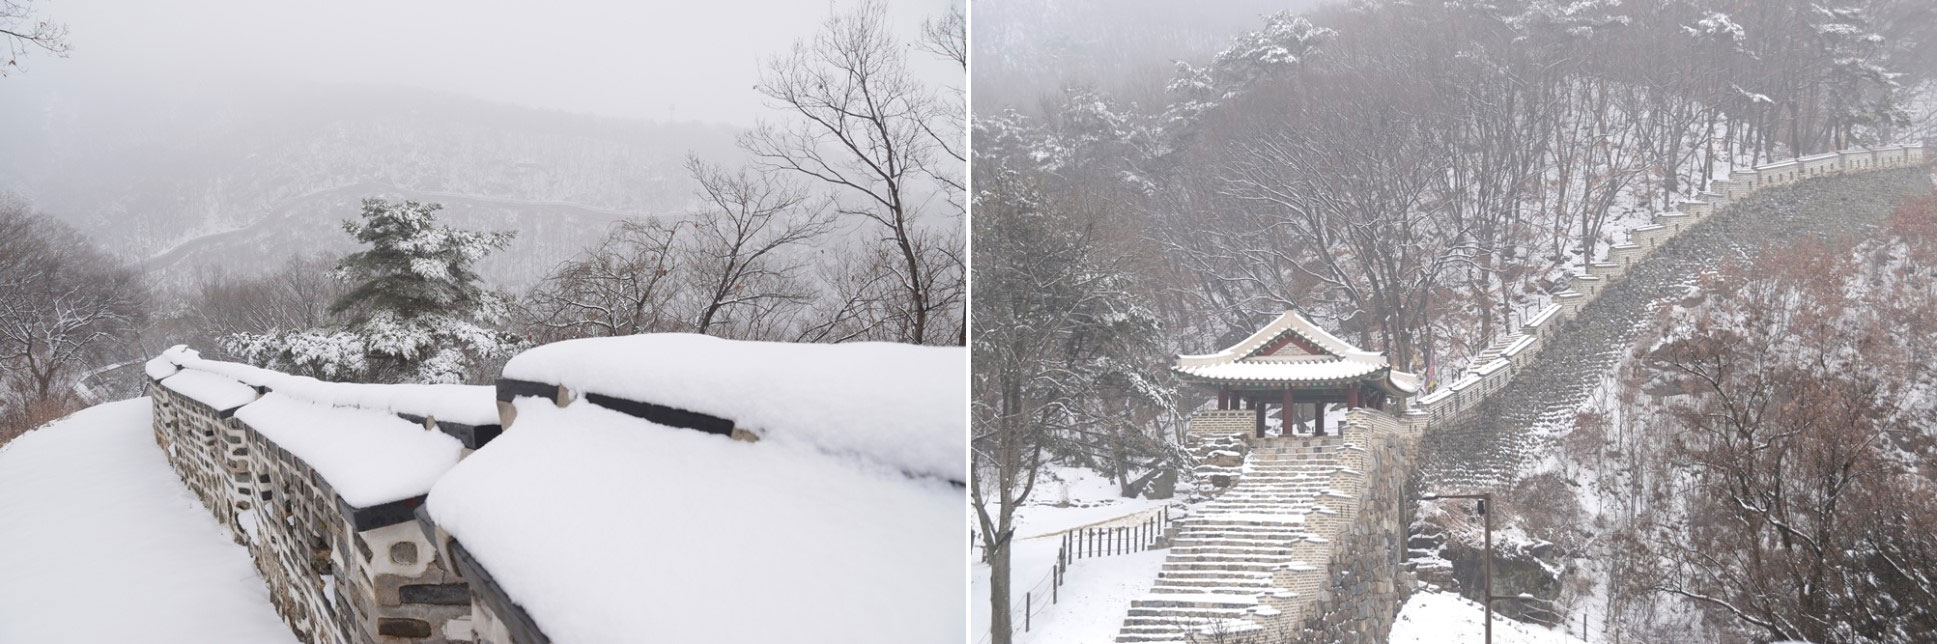 겨울의 끝자락에서 얻은 기회! 설국을 연상케 하는 `남한산성 성곽길` 설경 트레킹